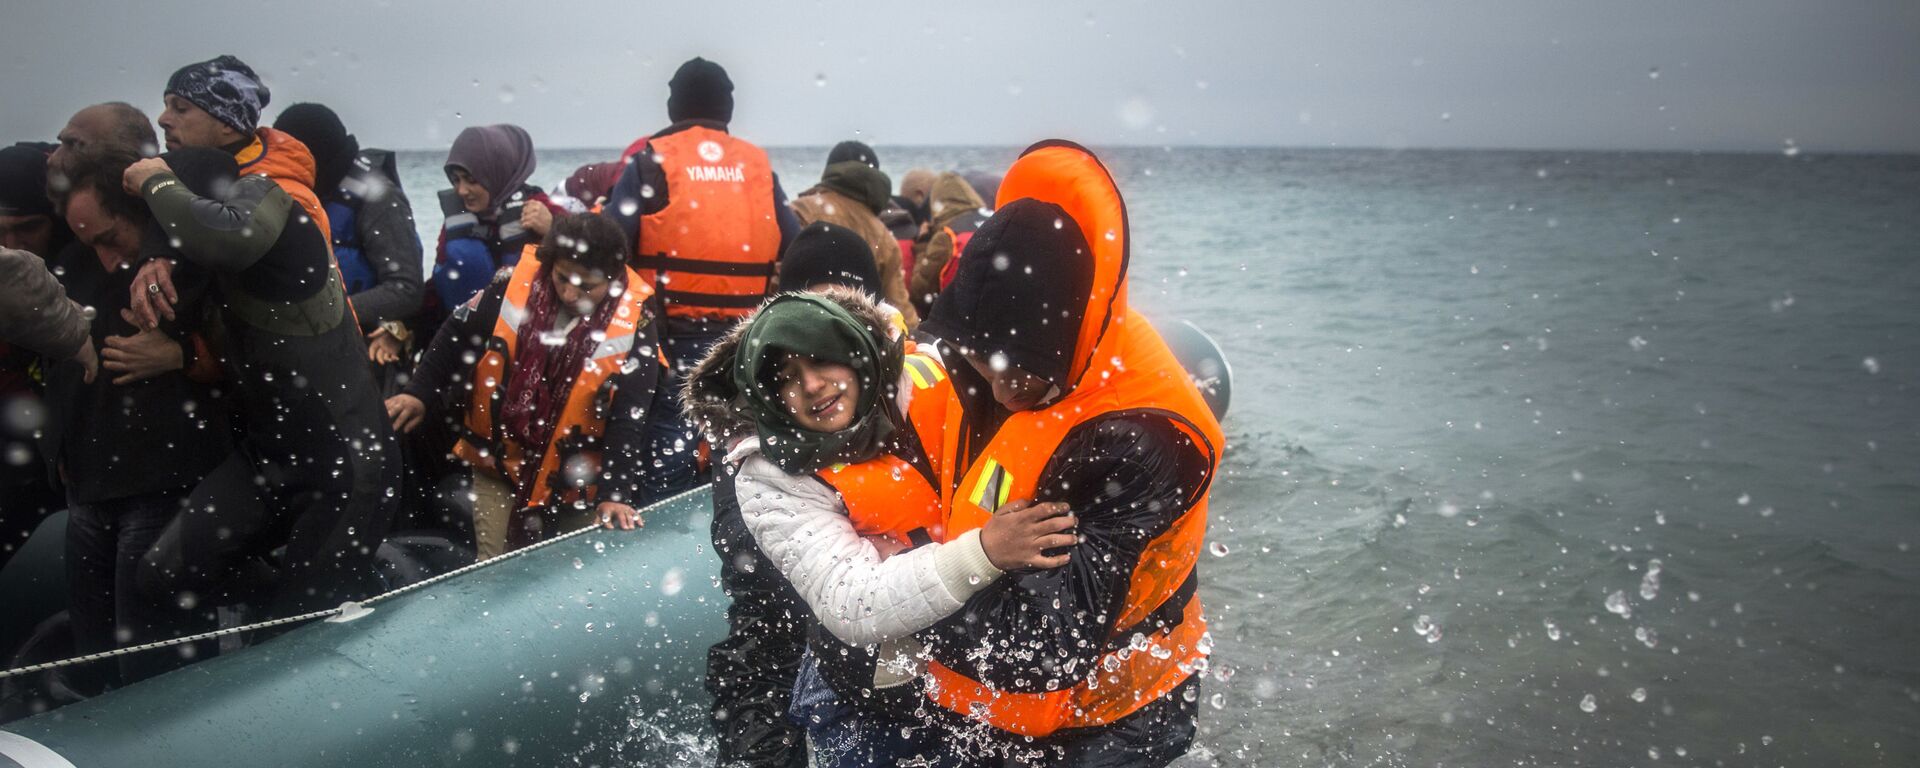 Refugiados y migrantes desembarcan en una playa después de cruzar una parte del mar Egeo desde Turquía hasta la isla griega de Lesbos - Sputnik Mundo, 1920, 21.06.2022